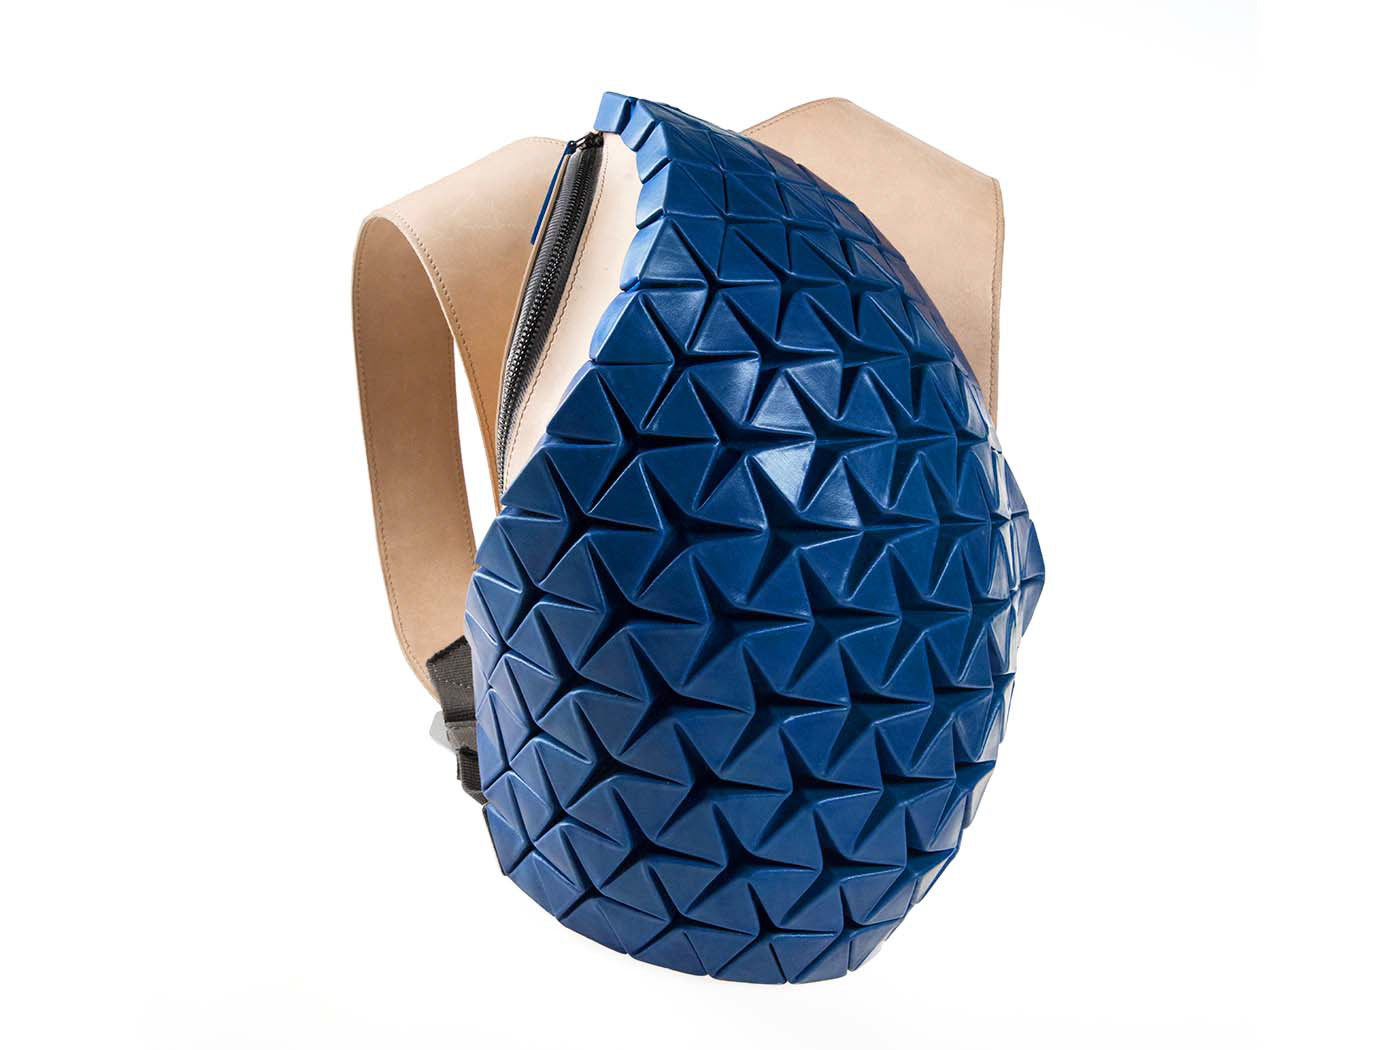 accessories backpack Cyberpunk Ergonomics Fashion  futuristic generative leather origami  parametric